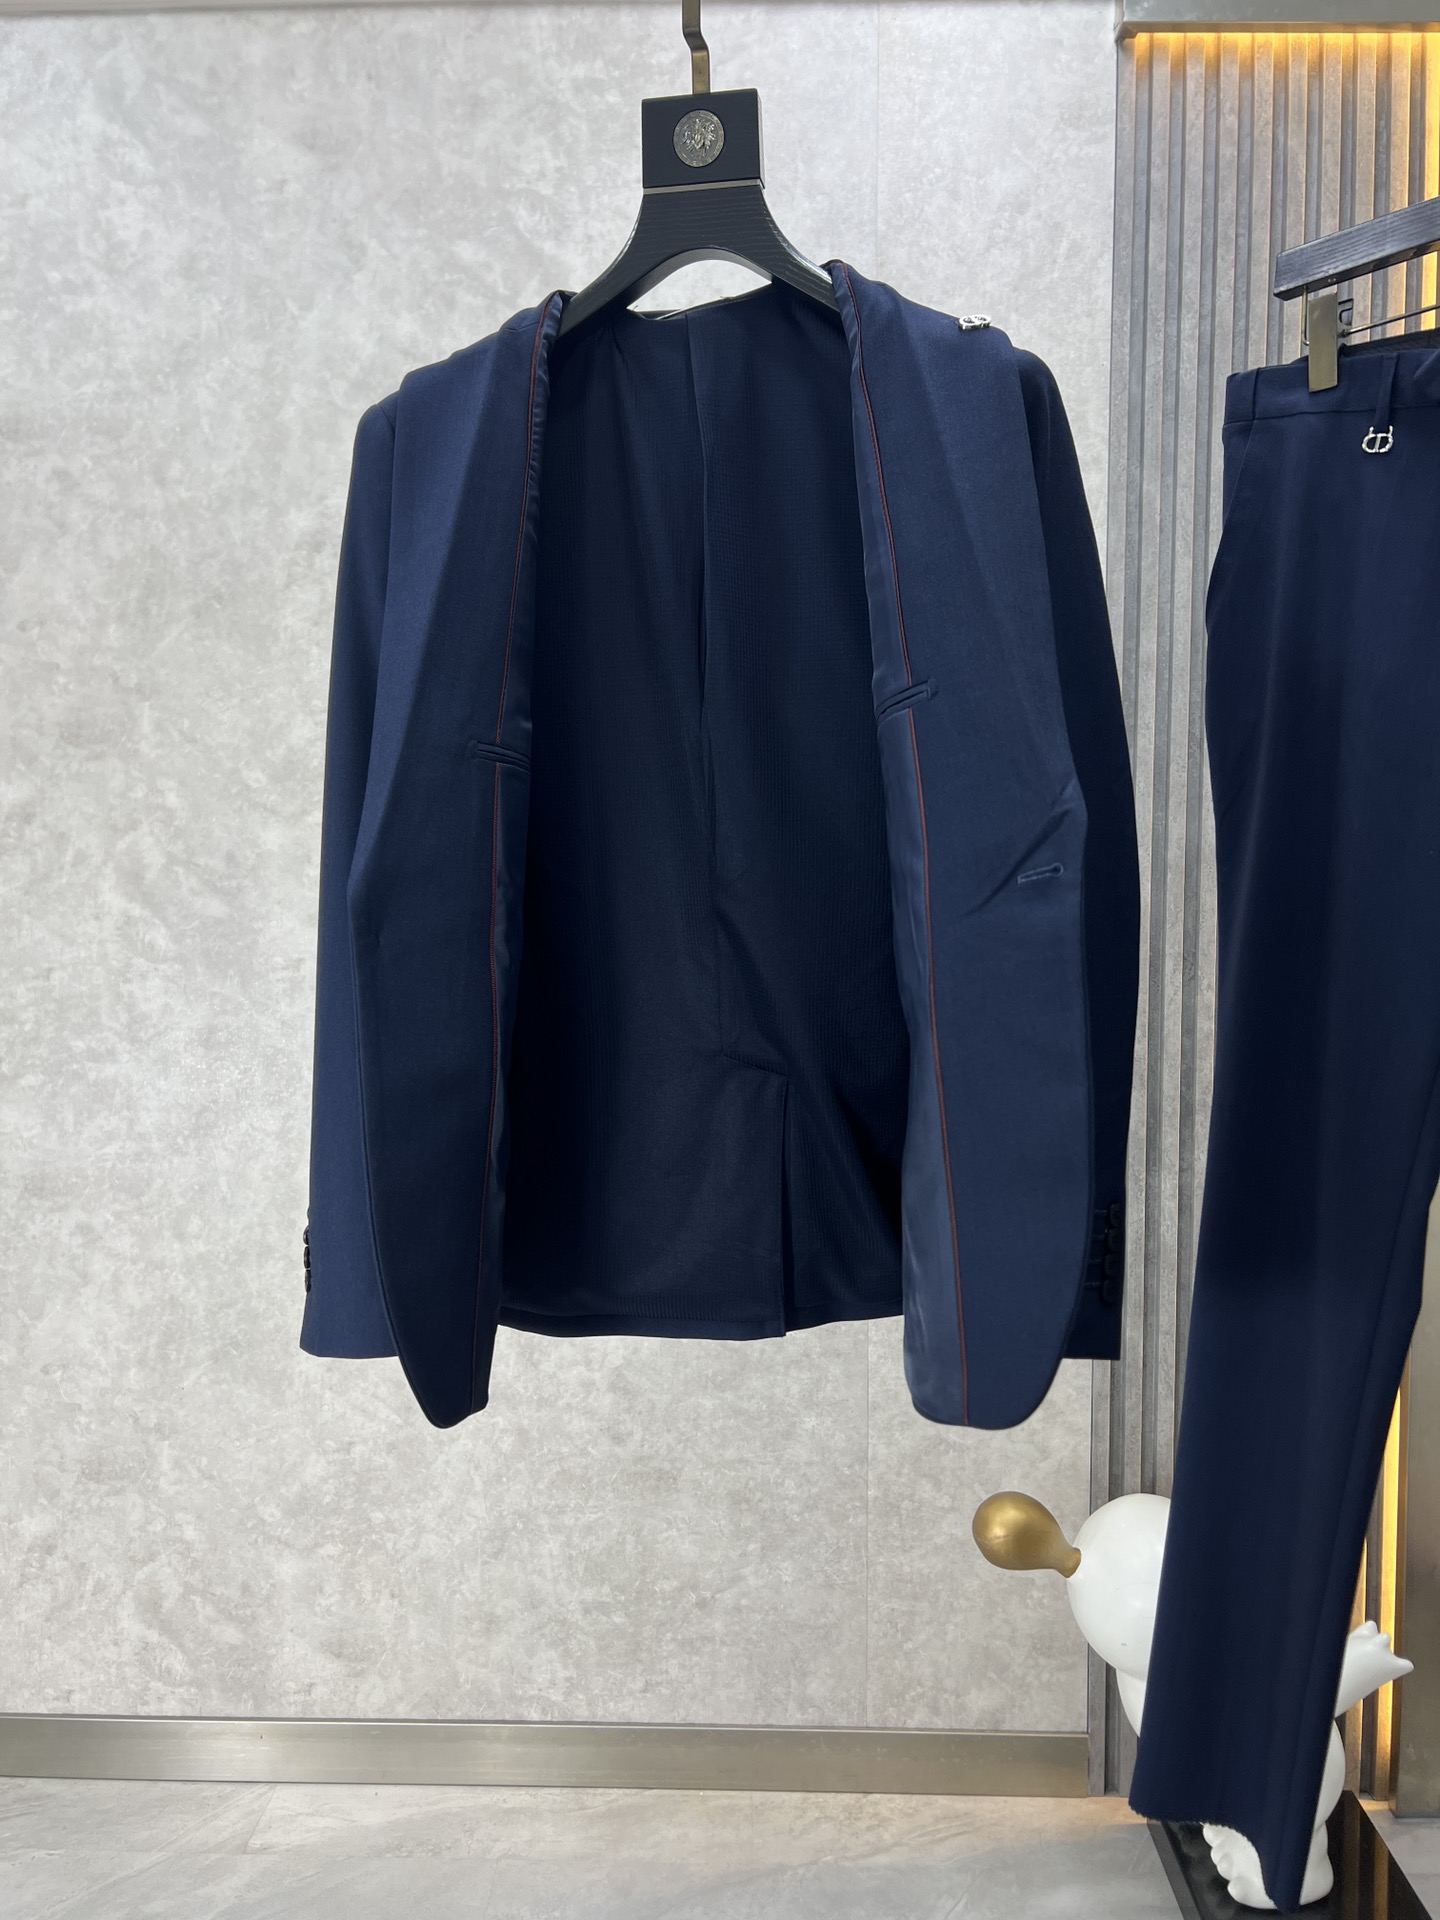 Dior迪奥秋冬新品休闲时尚原單西服套装品牌经典LOGO标记超级大方搭配内衬设计强调完美的线条将英伦低调